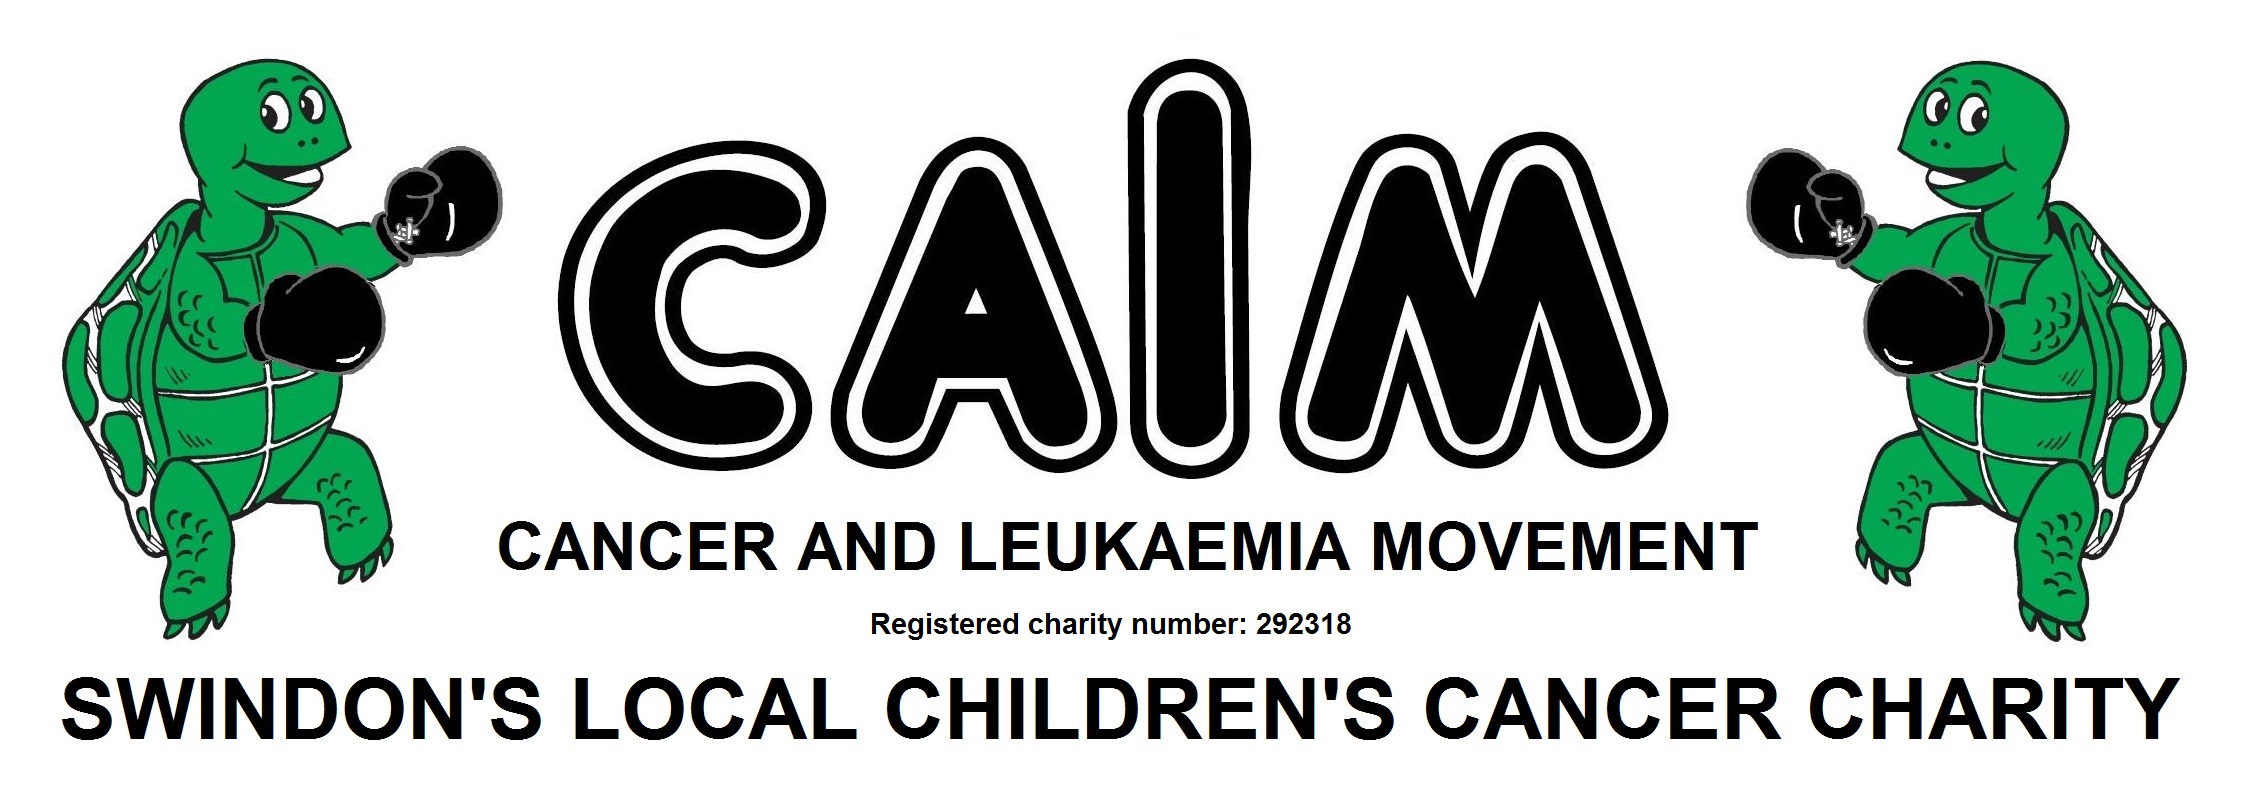 CALM logo 2016